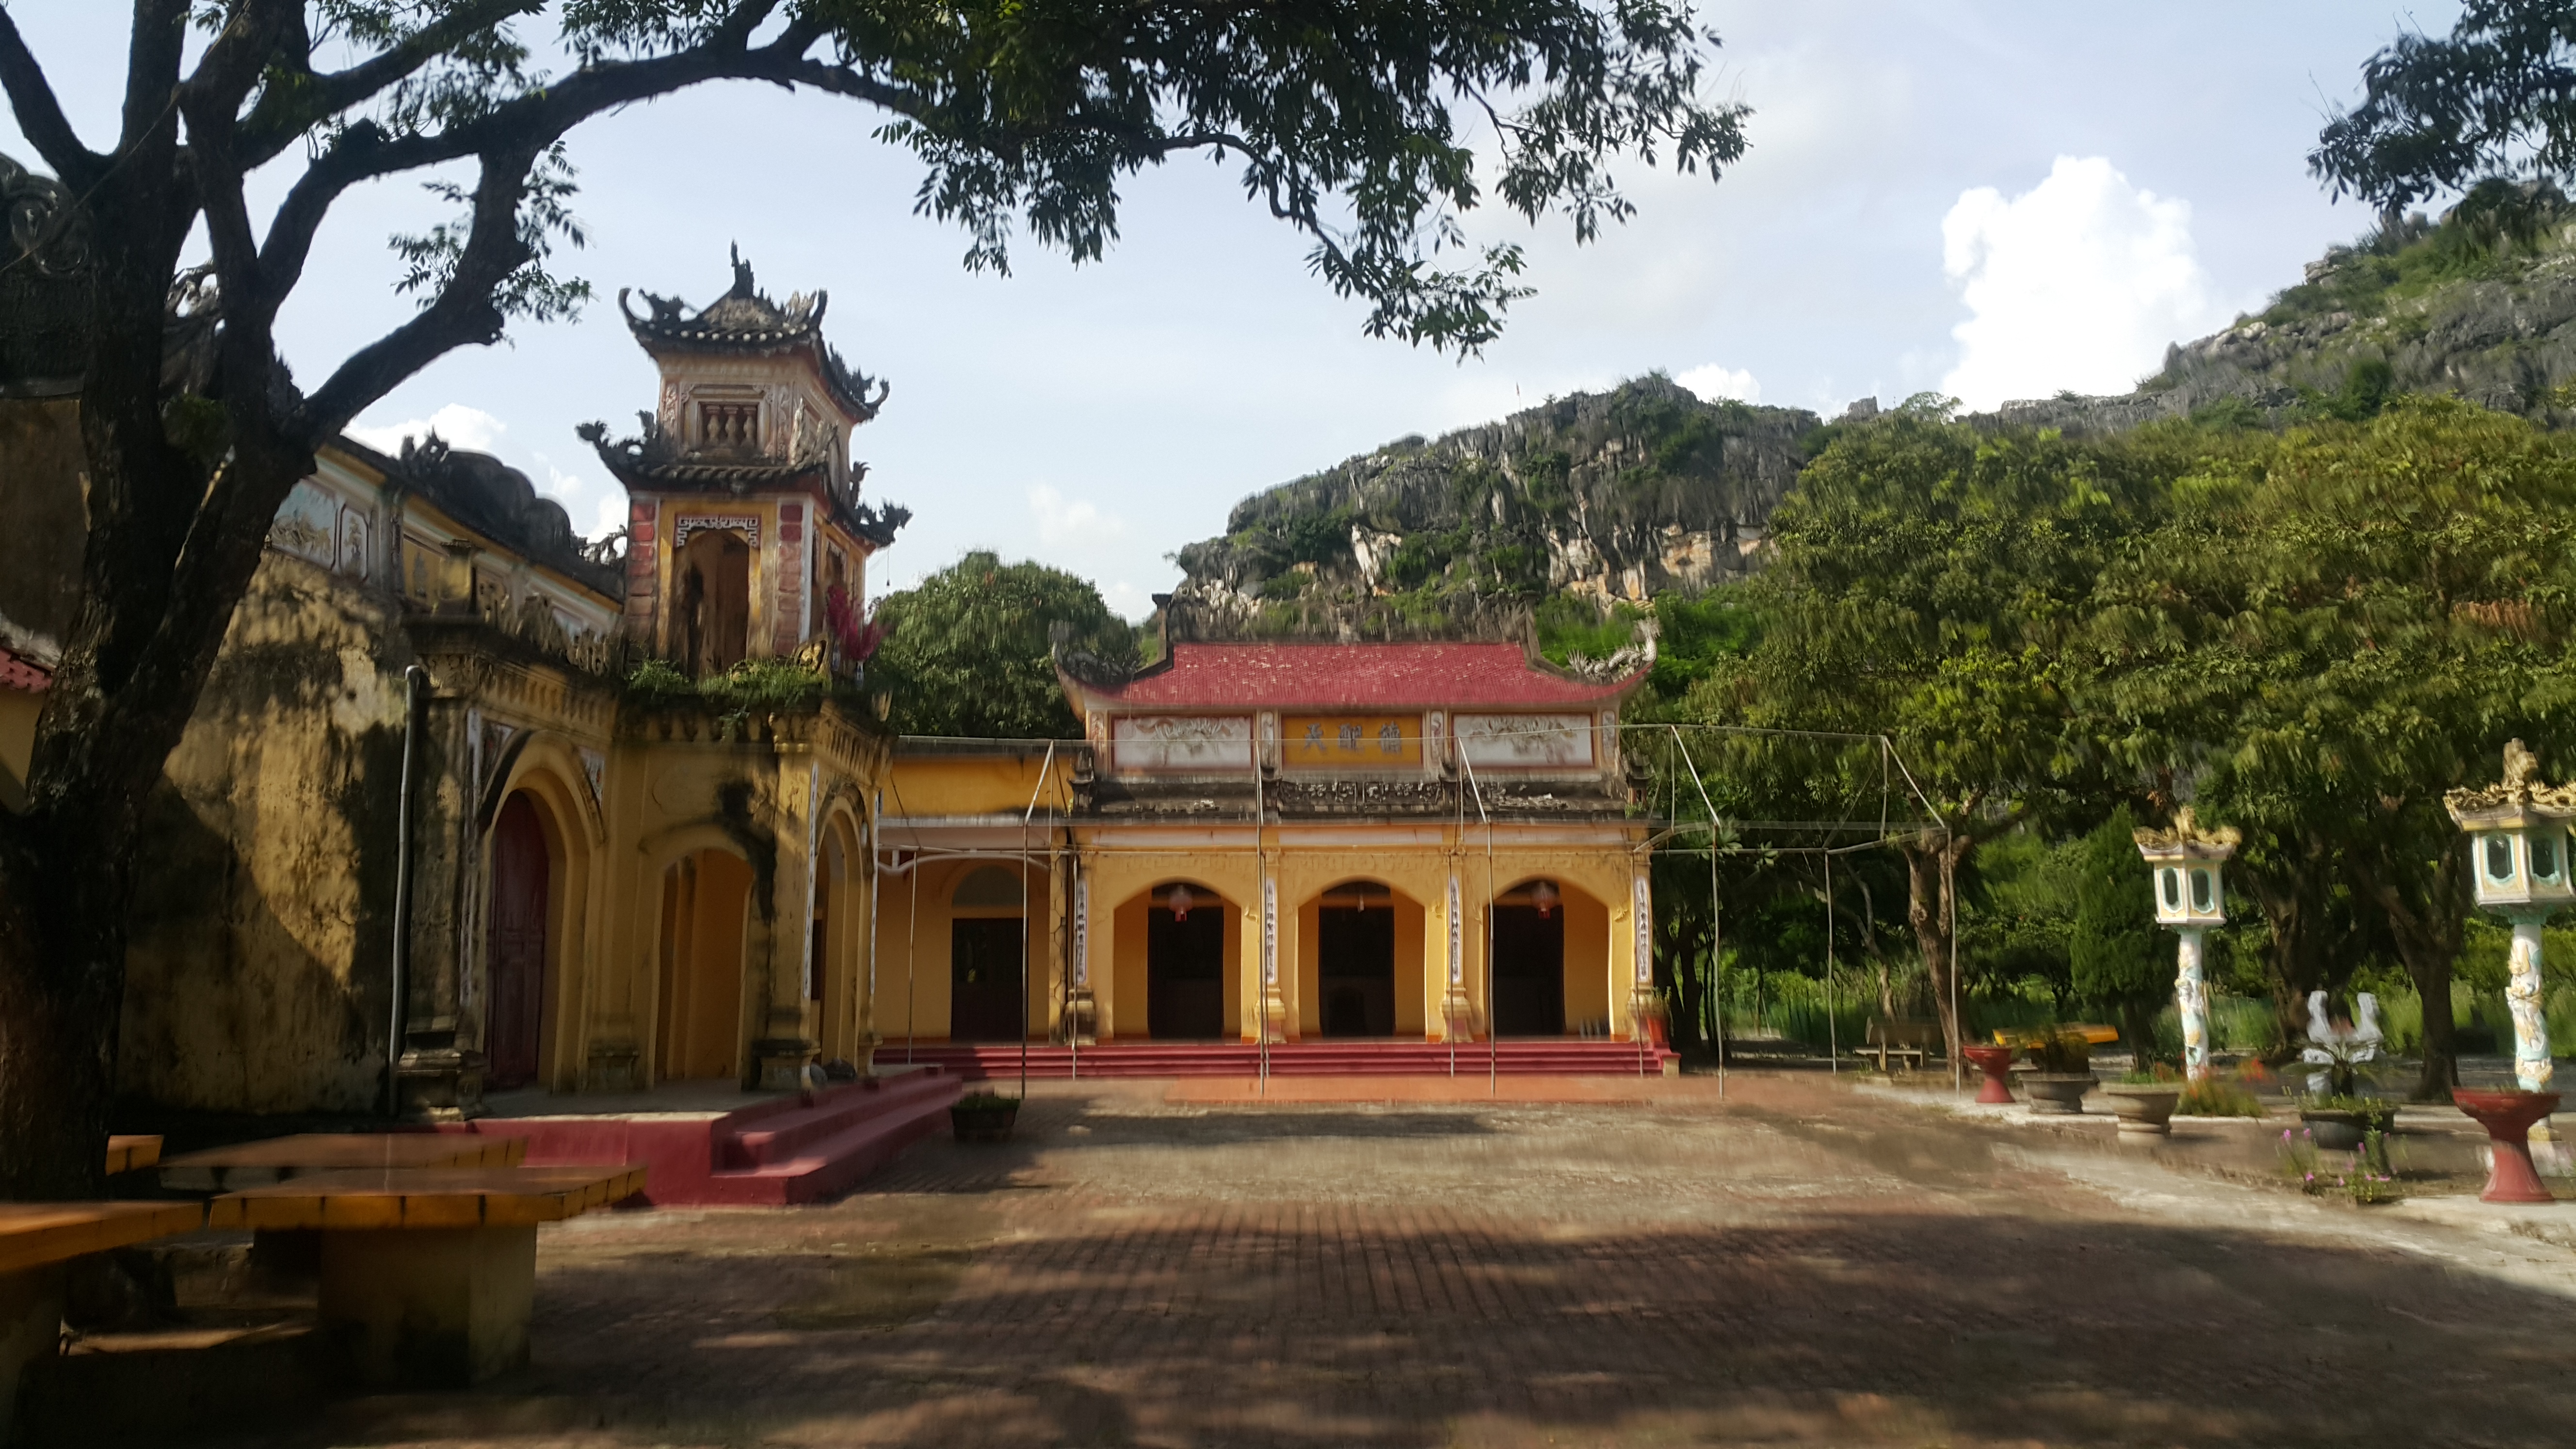  Chùa Tiên (Mậu Nam), ngôi chùa cổ xứ Thanh